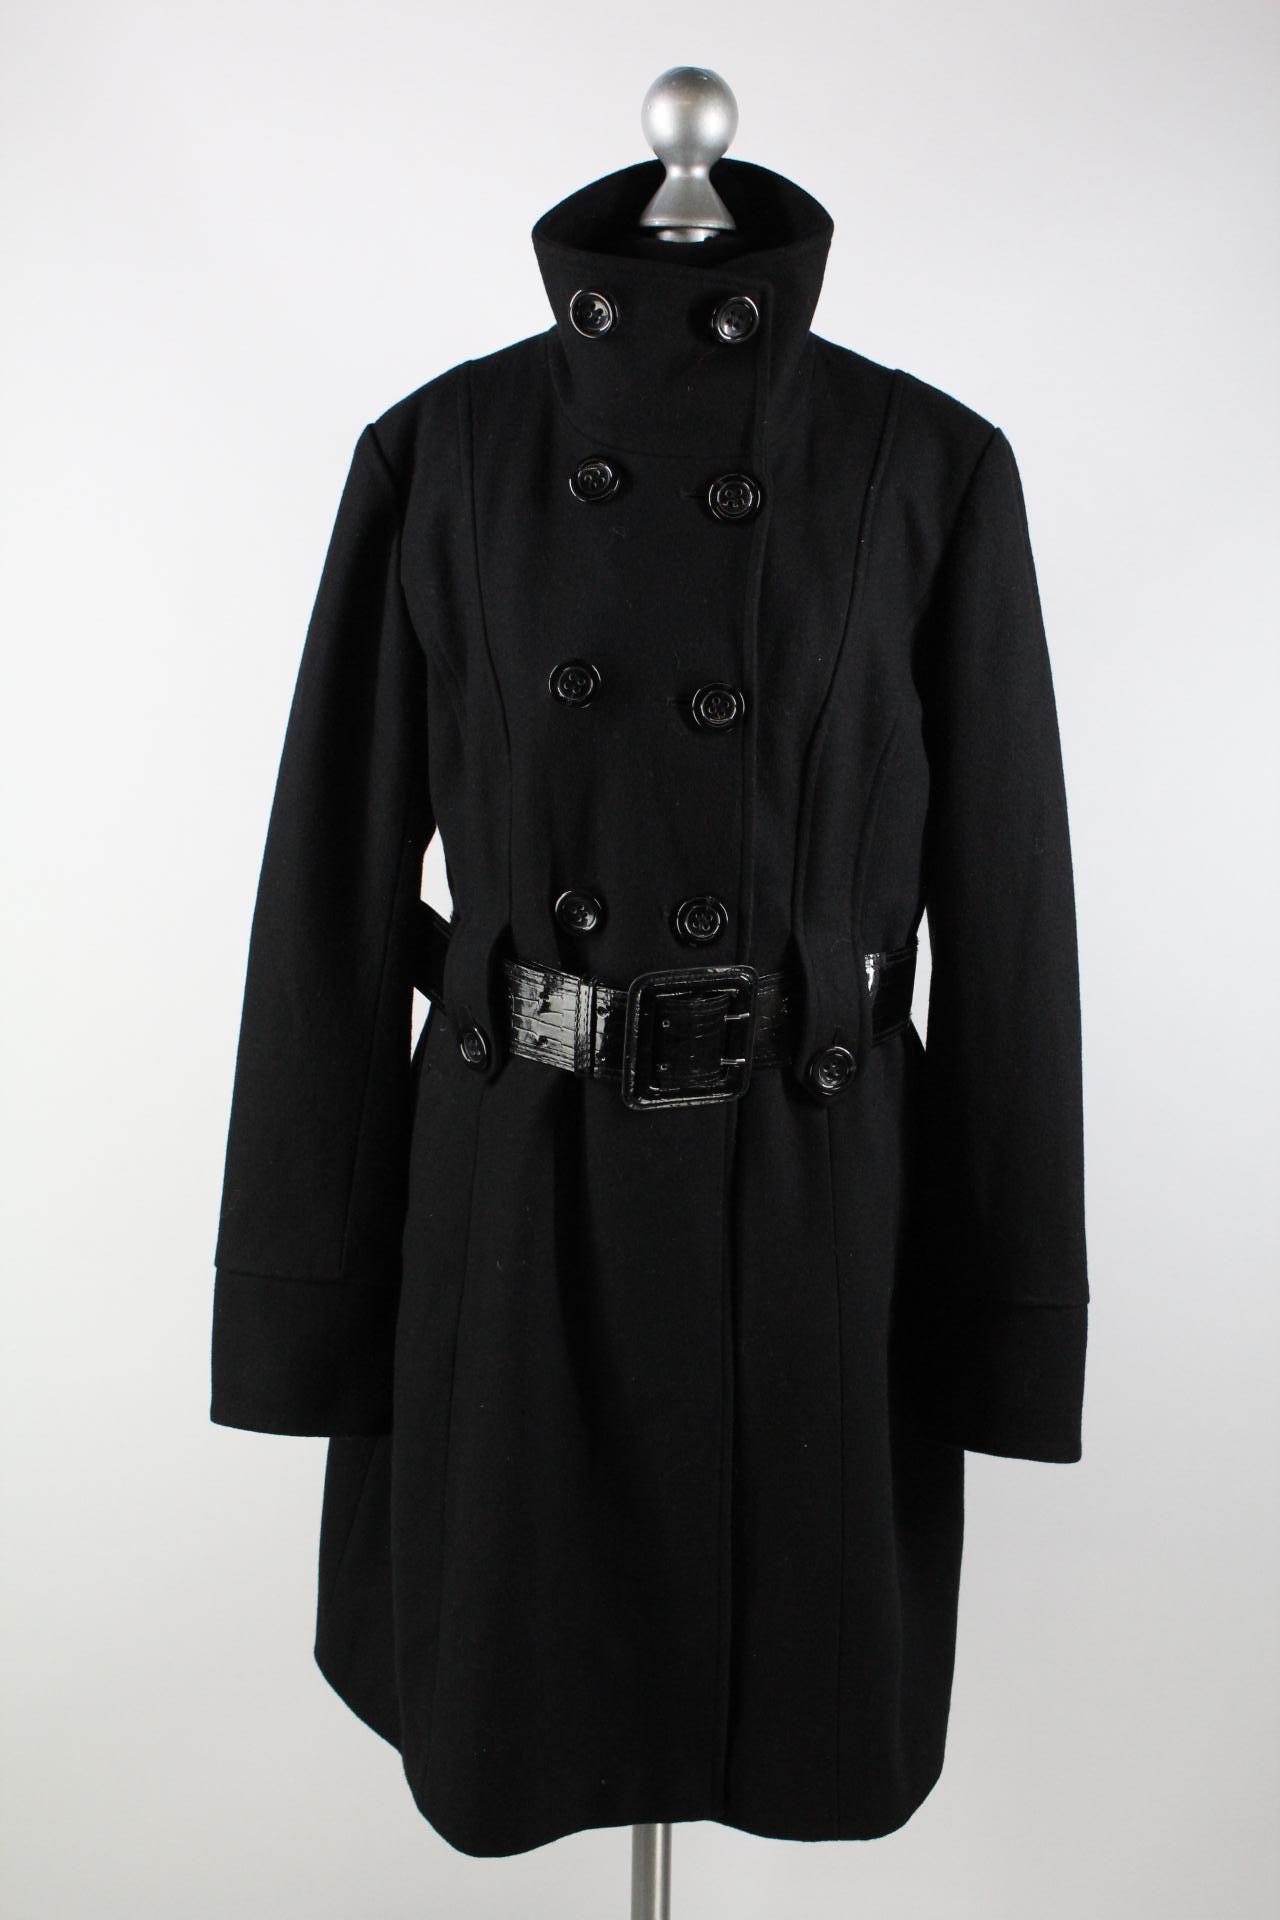 Yessica Damen-Mantel schwarz Größe 40